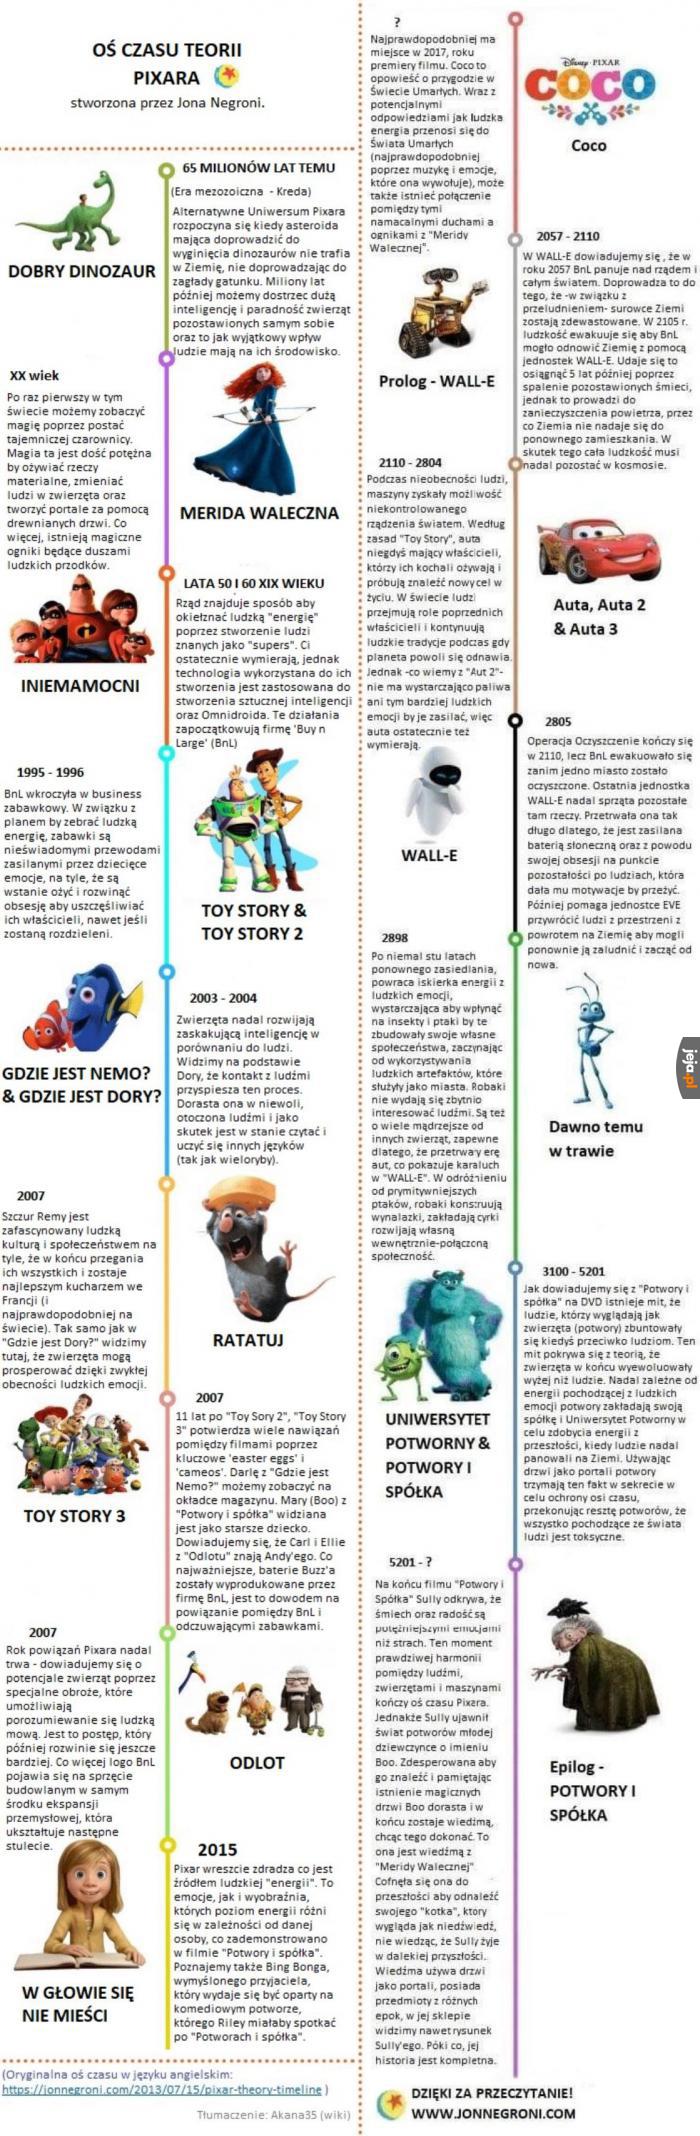 Oś czasu słynnej teorii Pixara